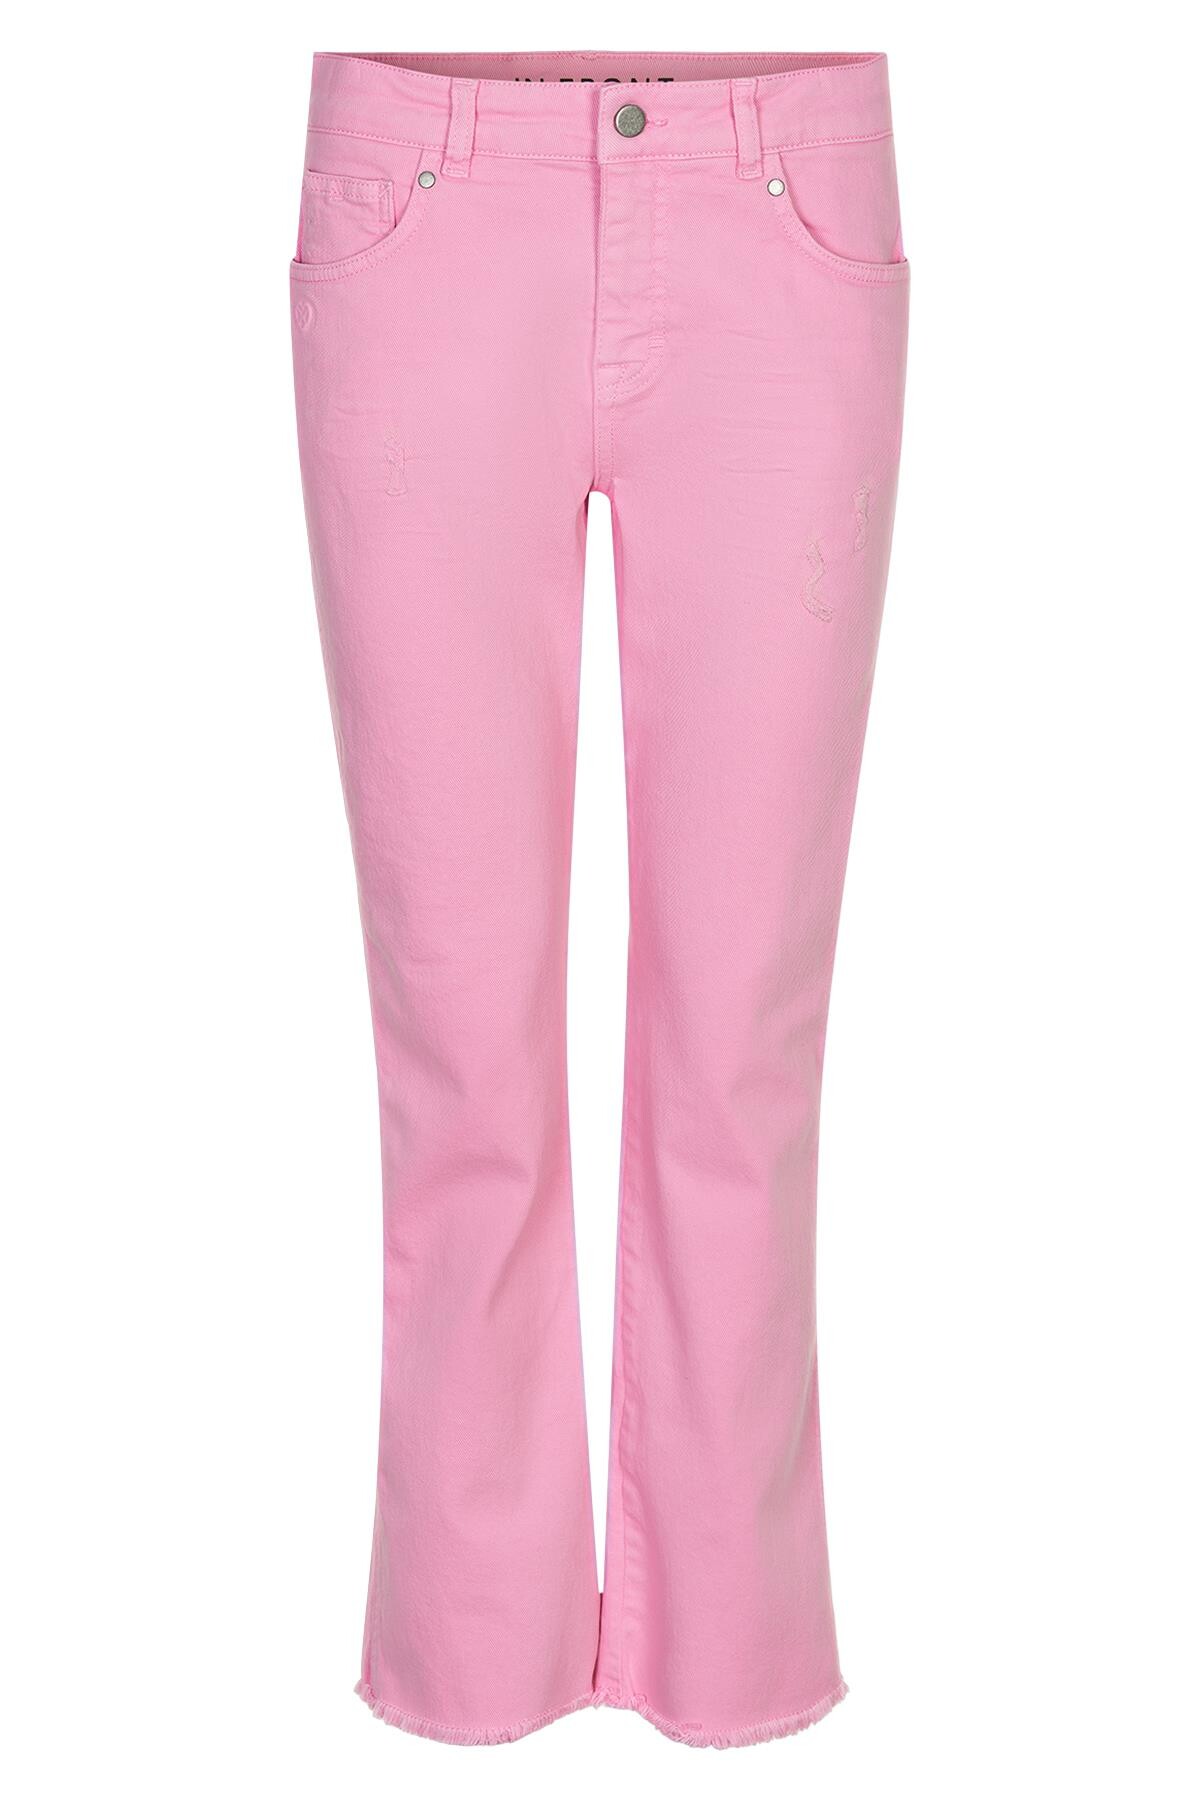 Se IN FRONT Ellie Jeans, Farve: Soft Pink, Størrelse: 38, Dame hos Infront Women